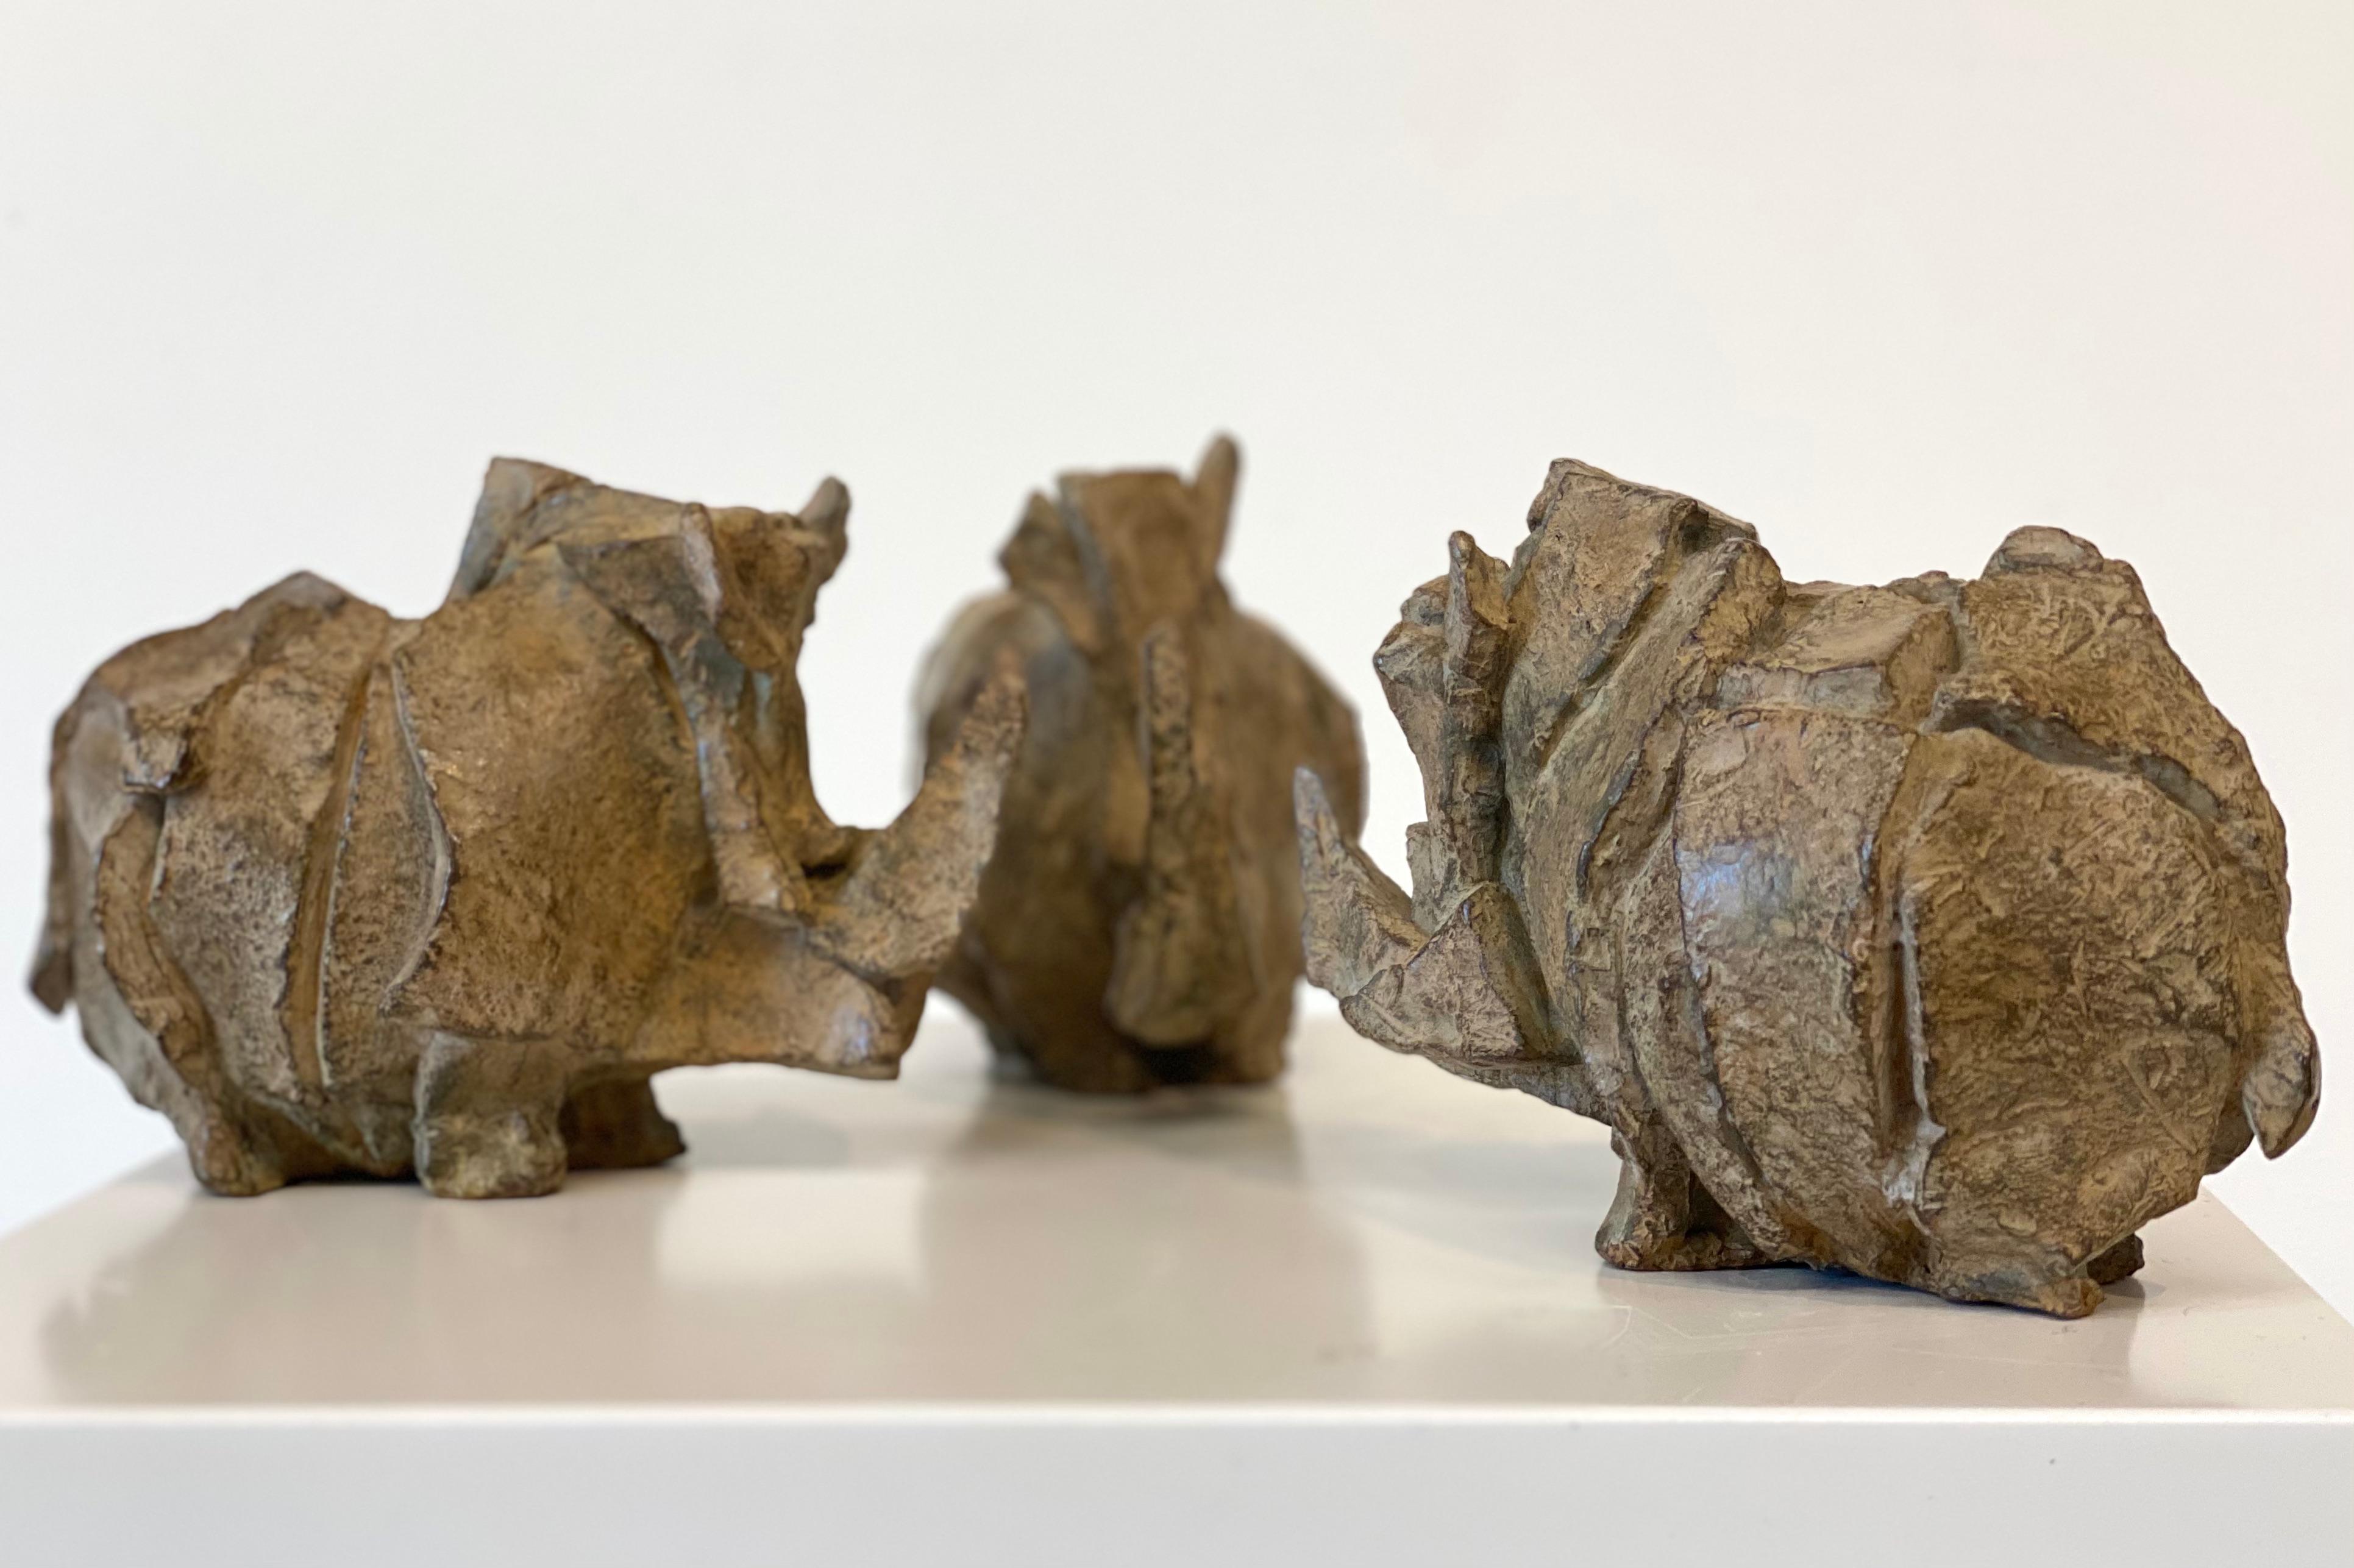 Ces trois sculptures sont réalisées par l'artiste néerlandaise Antoinette Briet. Ses formes sont toujours une abstraction du mouvement ou de l'immobilité dans le monde des animaux. Dans ces sculptures particulières, elle montre son admiration pour